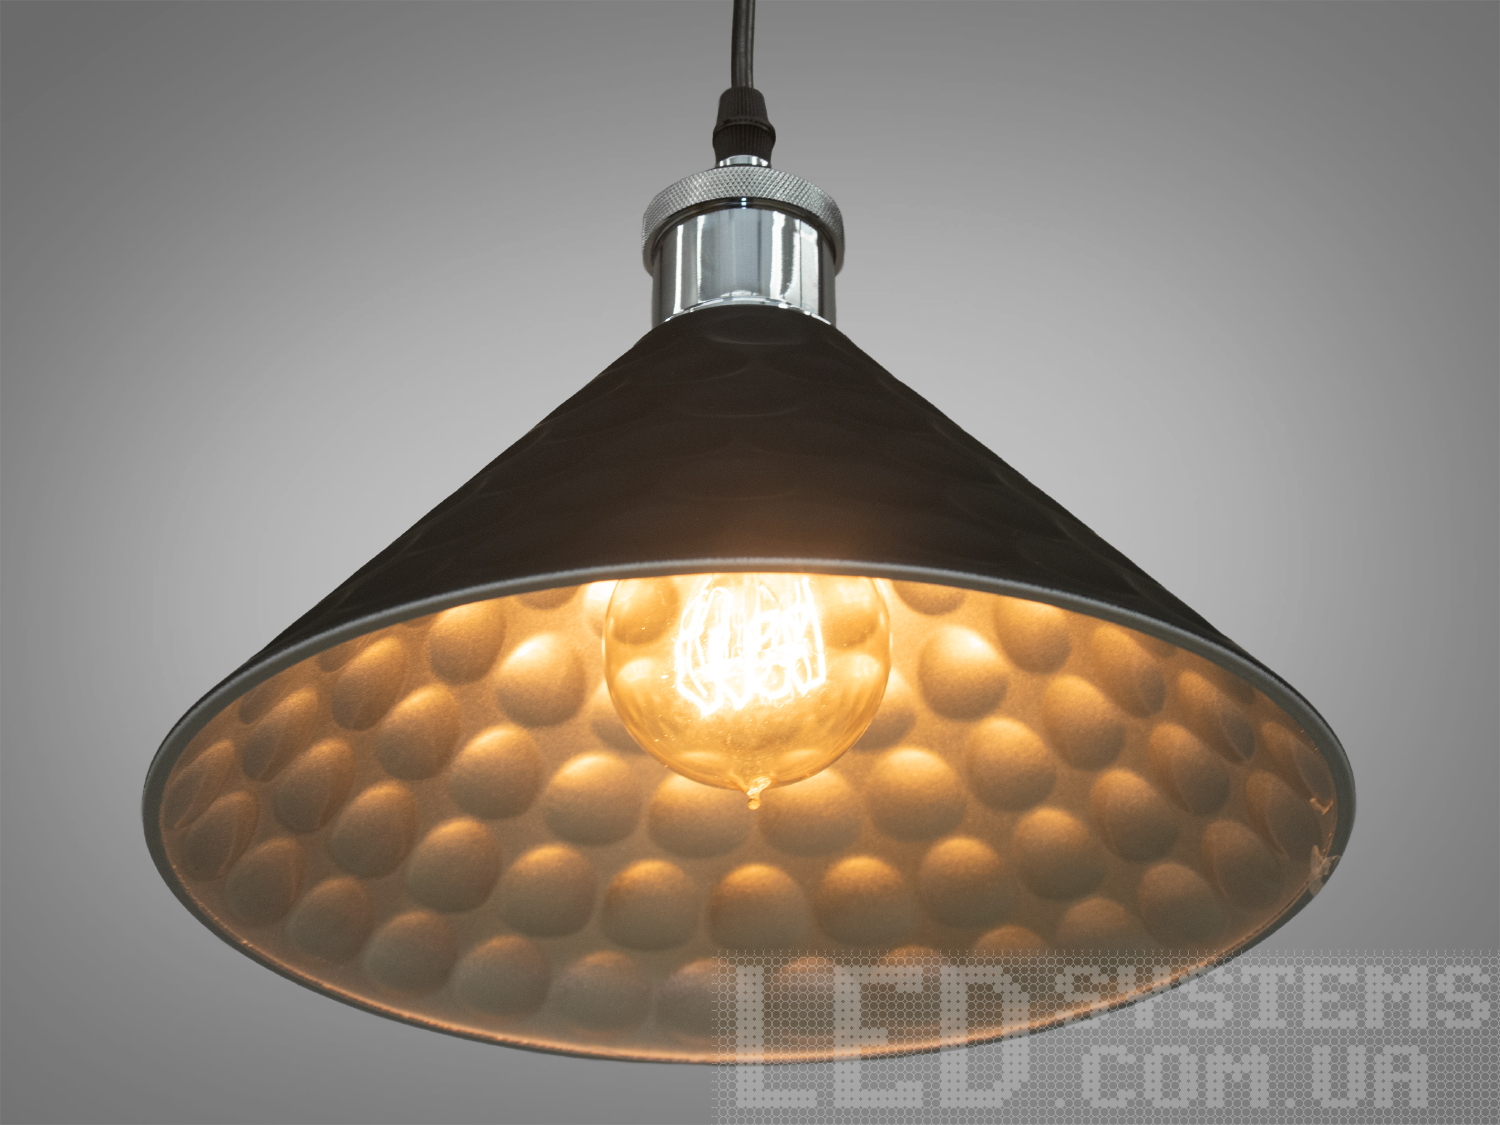 Унікальний, довершений світильник-підвіс в стилі Лофт, під лампу Едісона, чорний+хромПодвесы, Светильники 